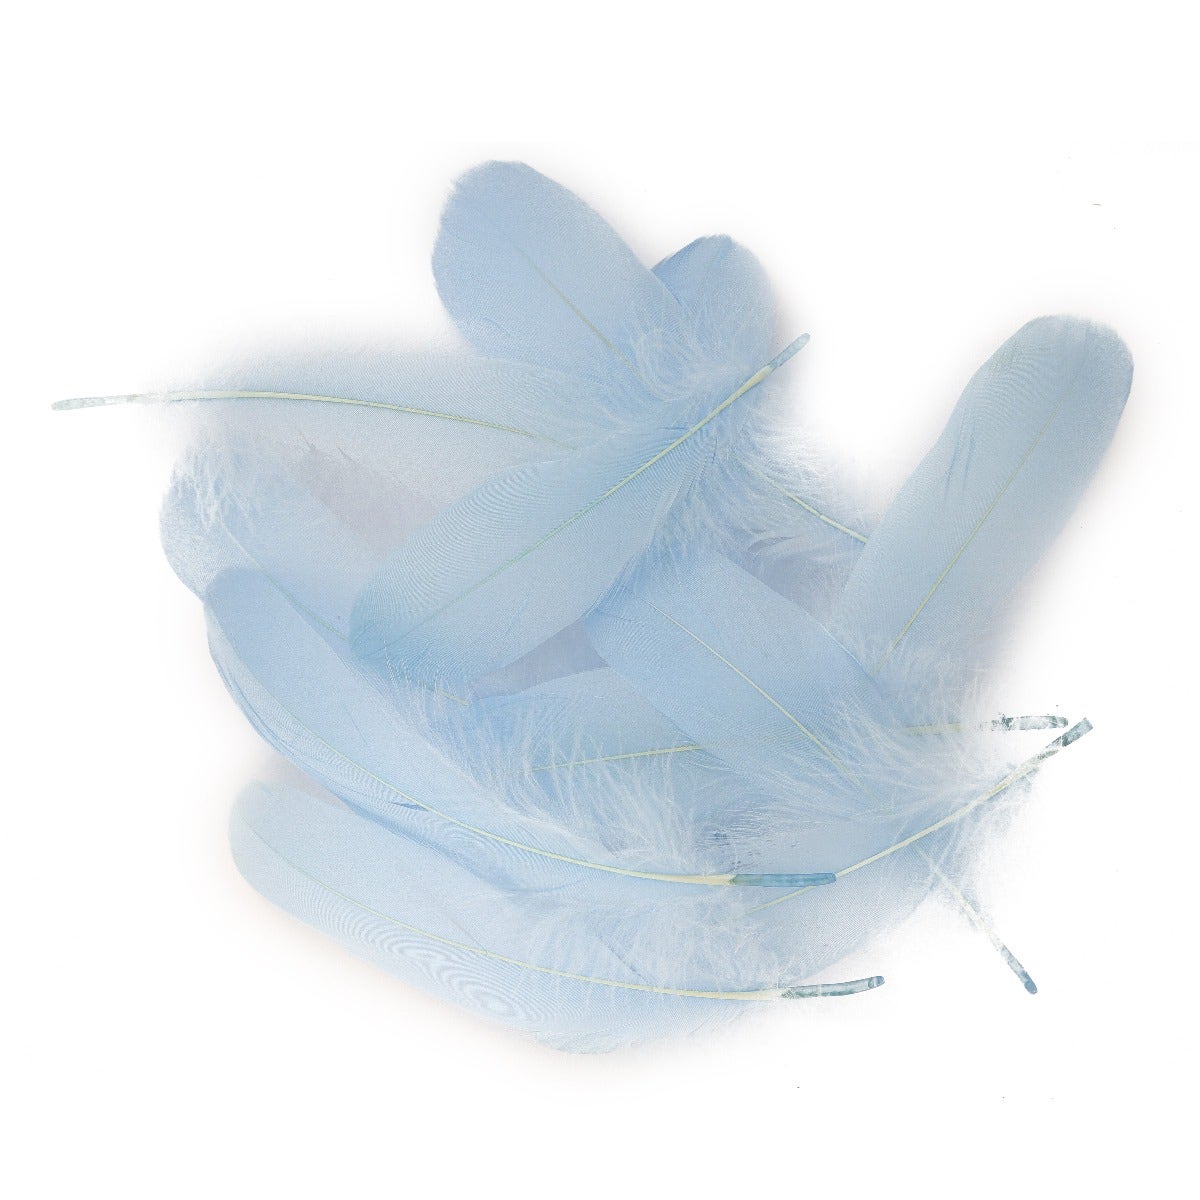 Goose Pallet Feathers 6-8" - 12 pc - Light Blue